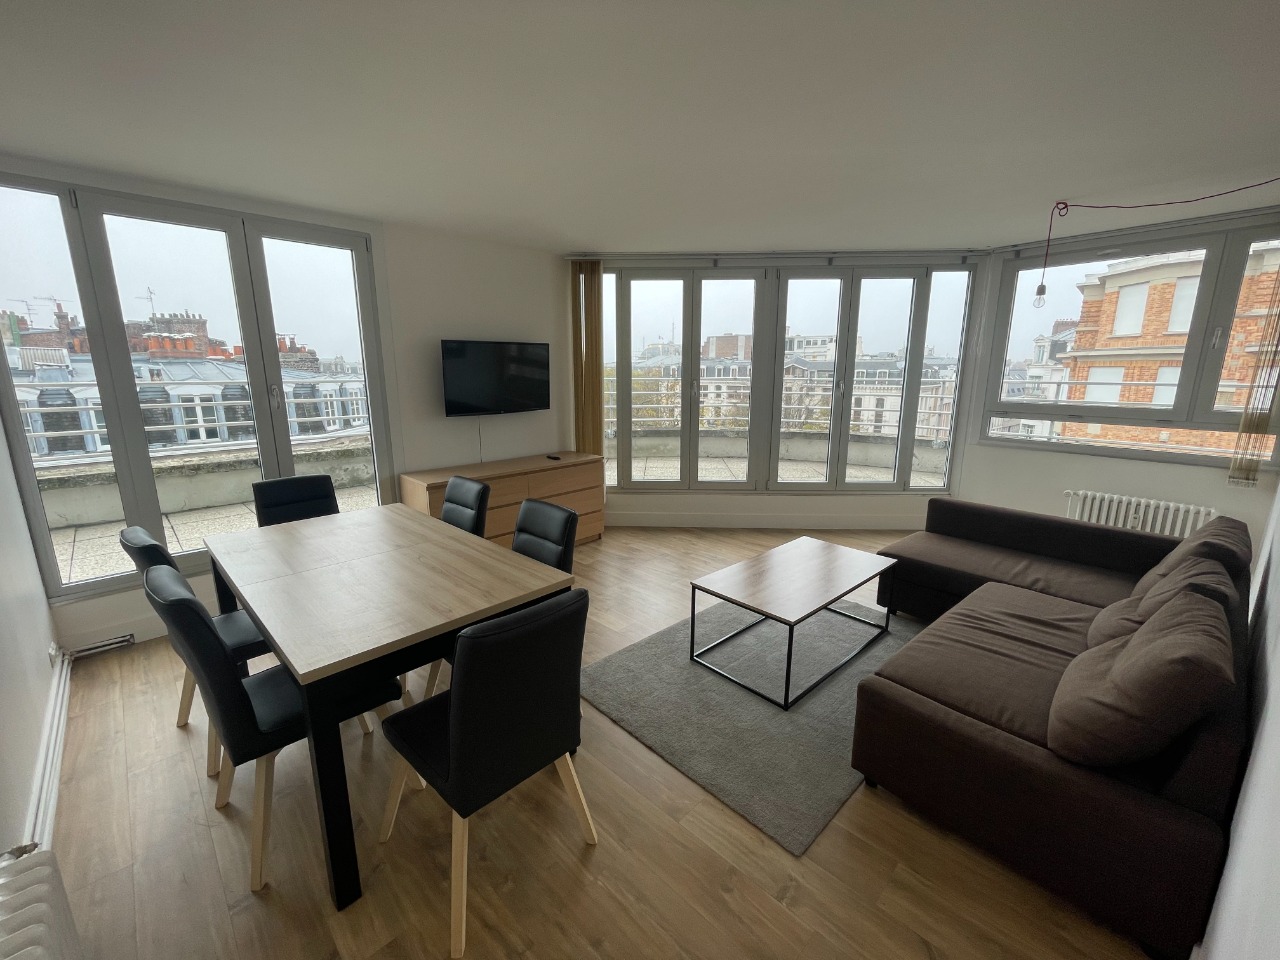 Location appartement 59000 Lille - Lille République - T4 meublé de 90m2 - Balcon et parking